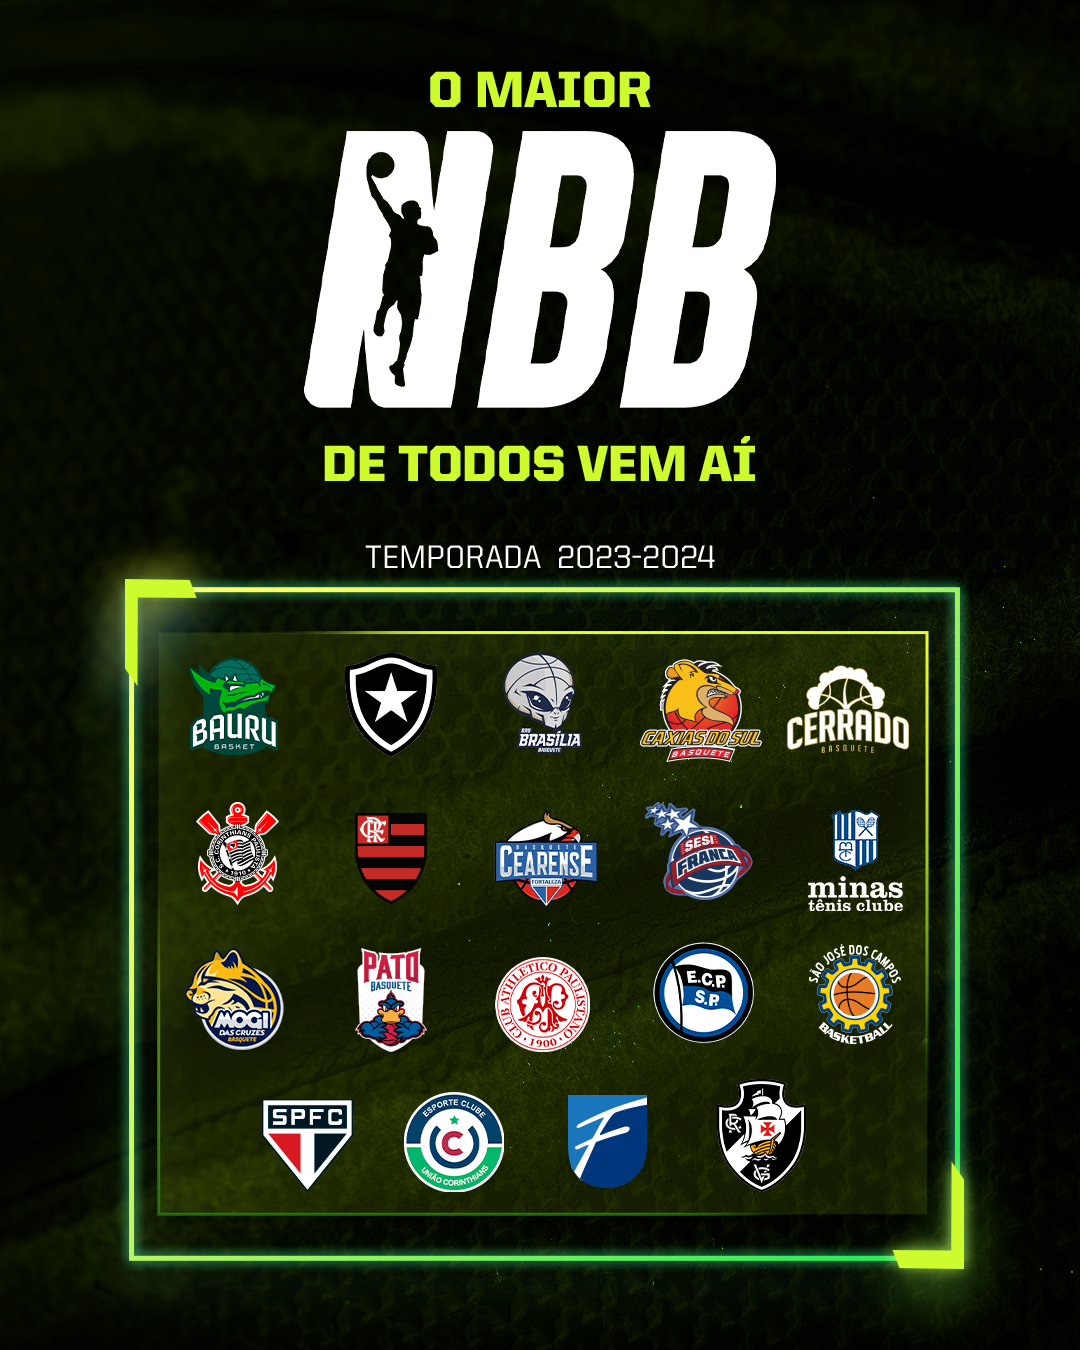 Confederação Brasileira tira chancela da Liga Nacional de Basquete